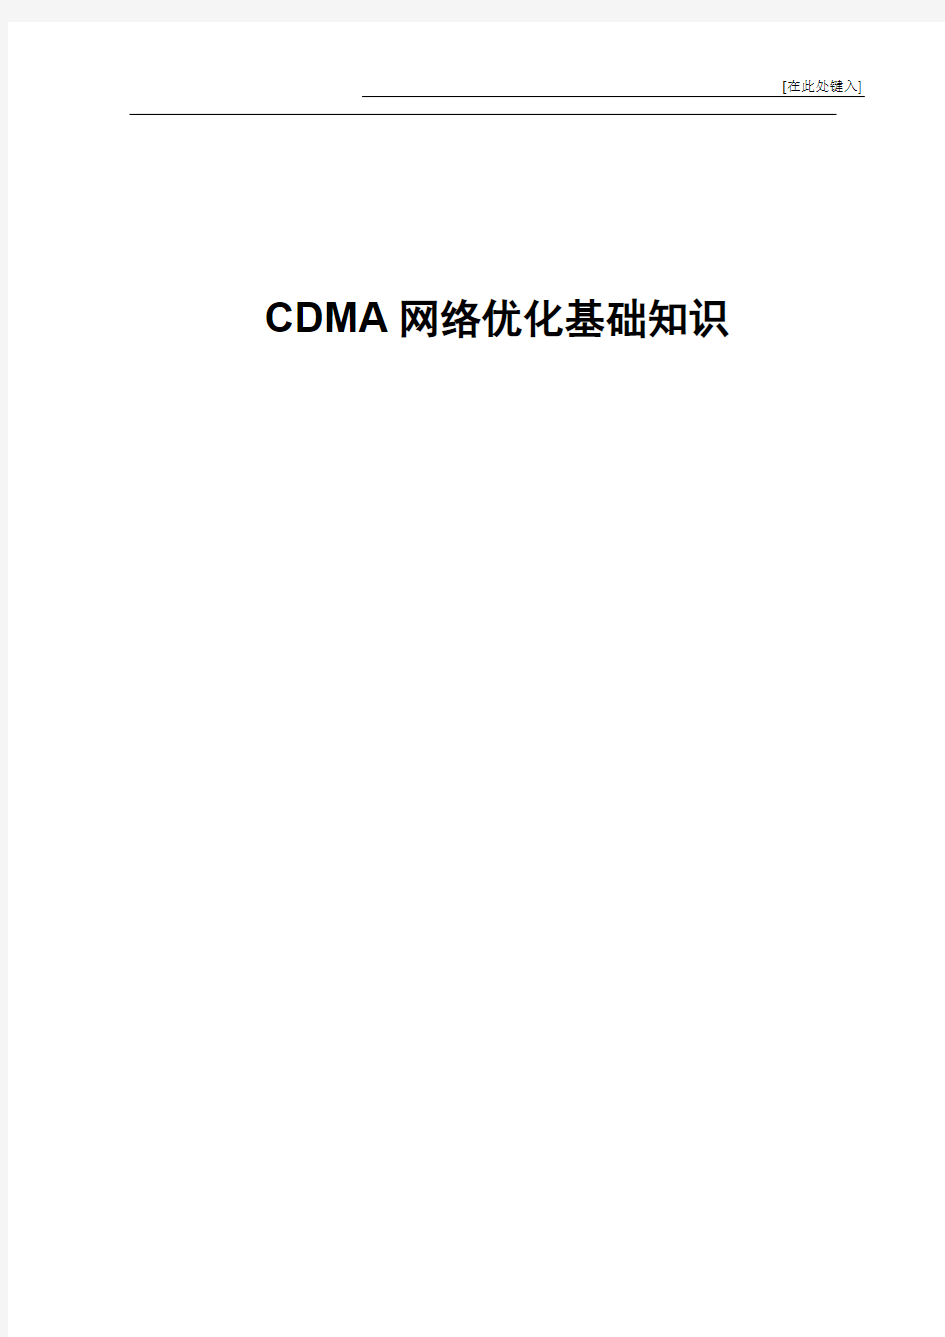 中国电信CDMA网络优化基础知识(一)